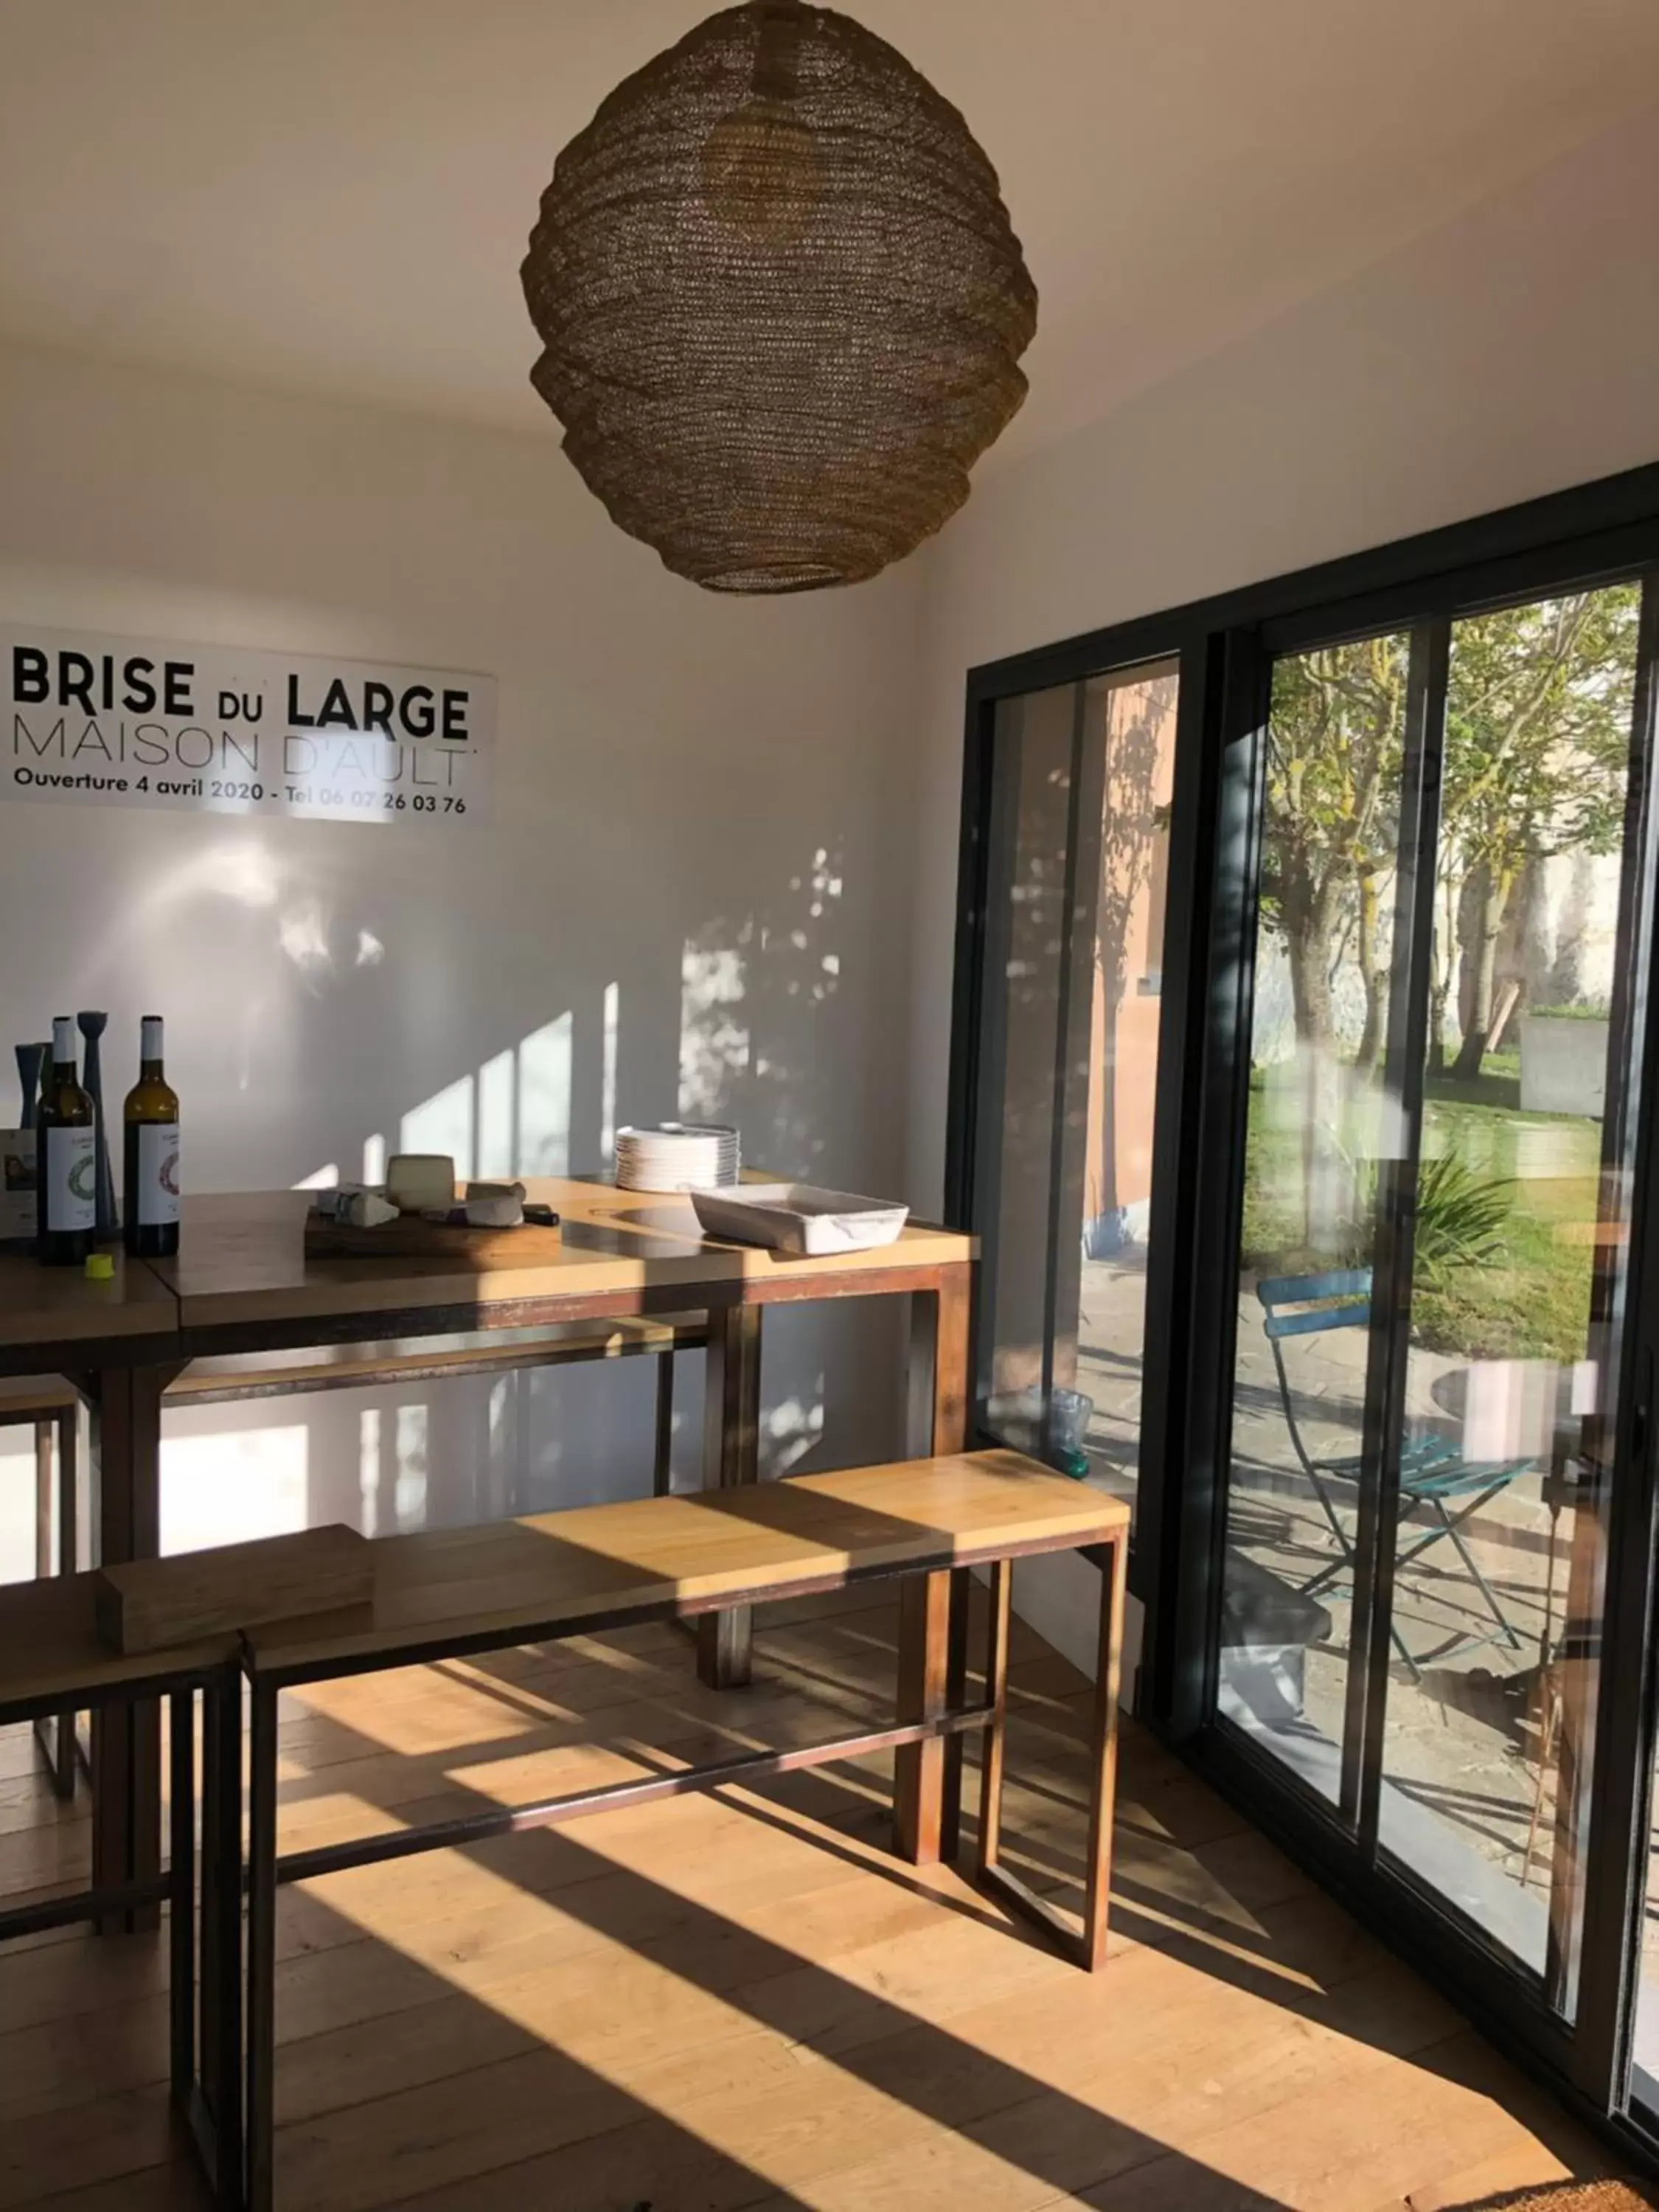 Restaurant/Places to Eat in Brise du Large - Maison d'Ault